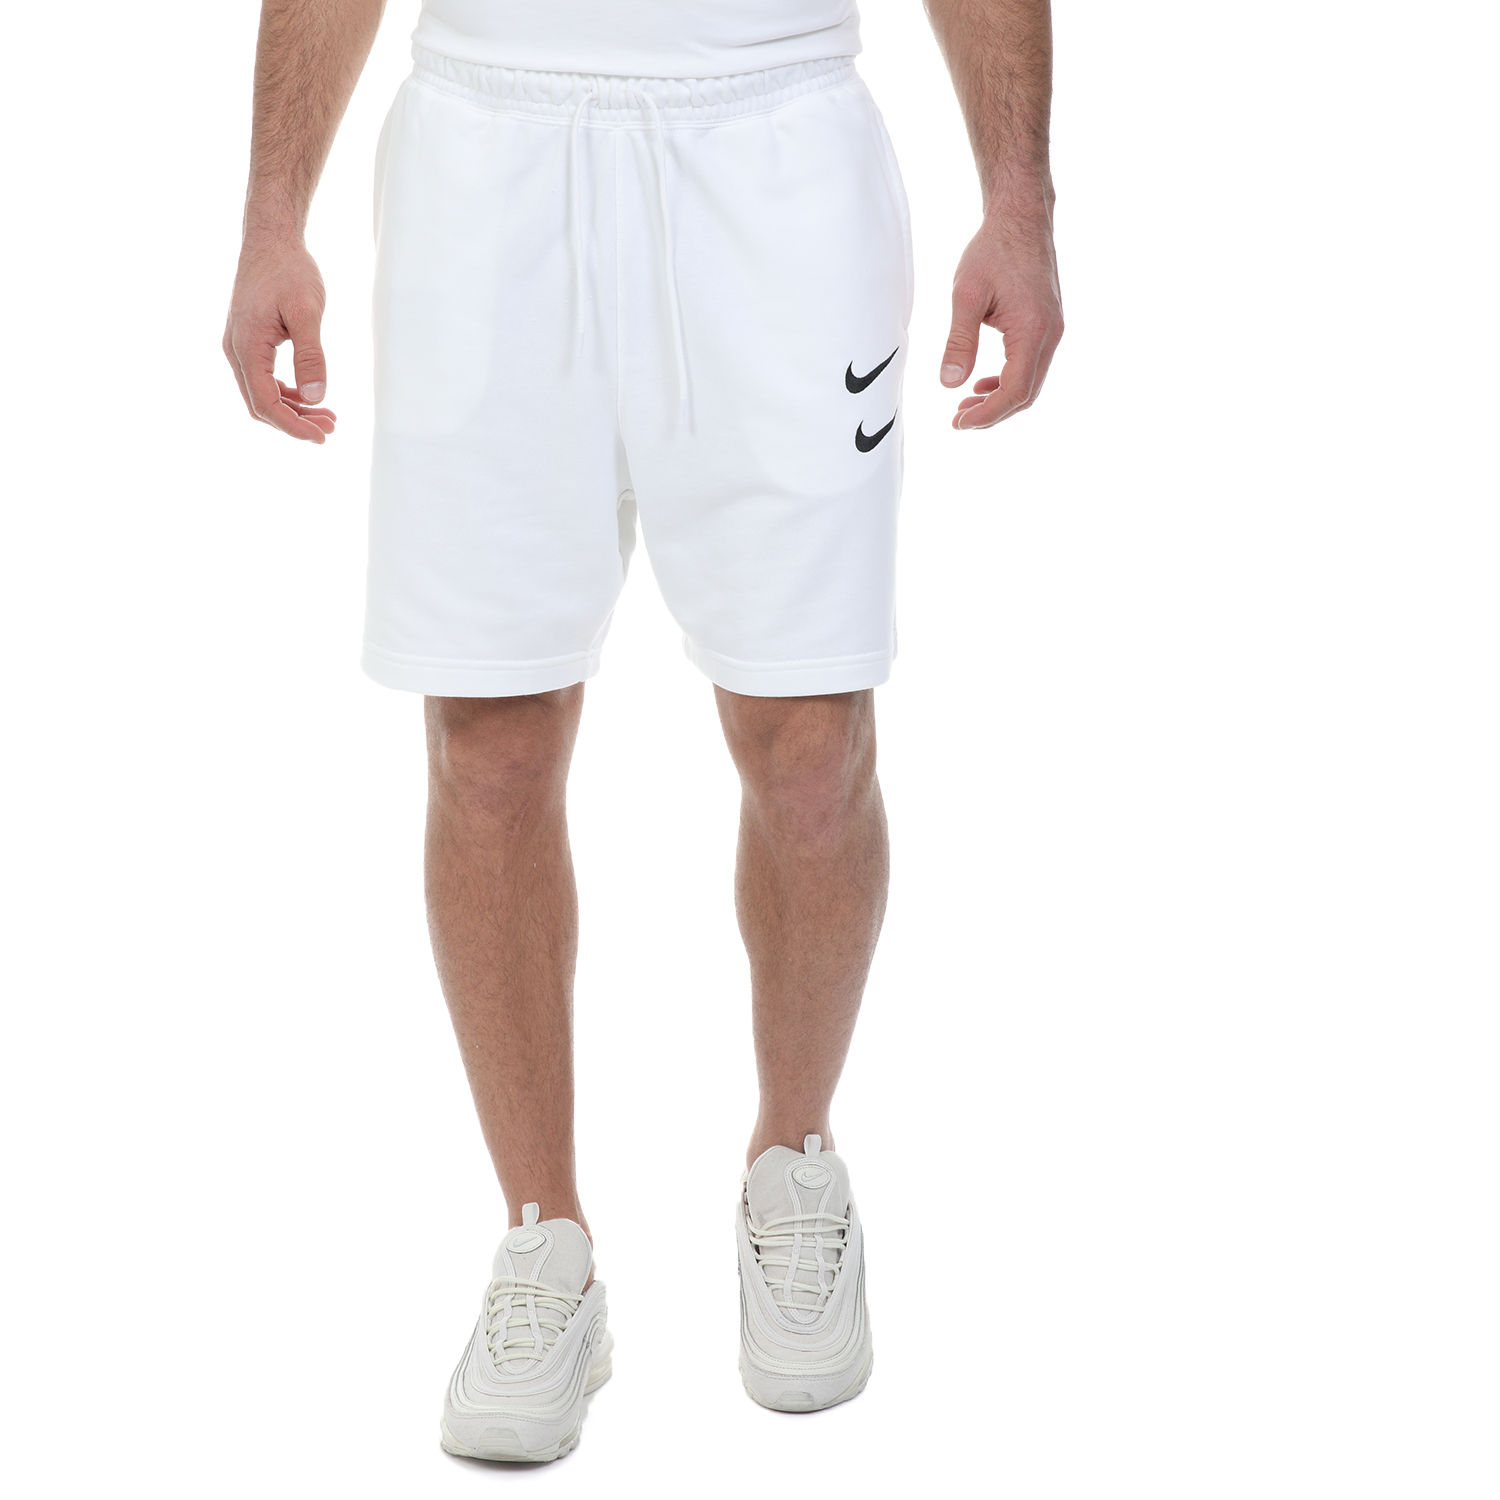 Ανδρικά/Ρούχα/Σορτς-Βερμούδες/Αθλητικά NIKE - Ανδρική βερμούδα NIKE NSW SWOOSH λευκή